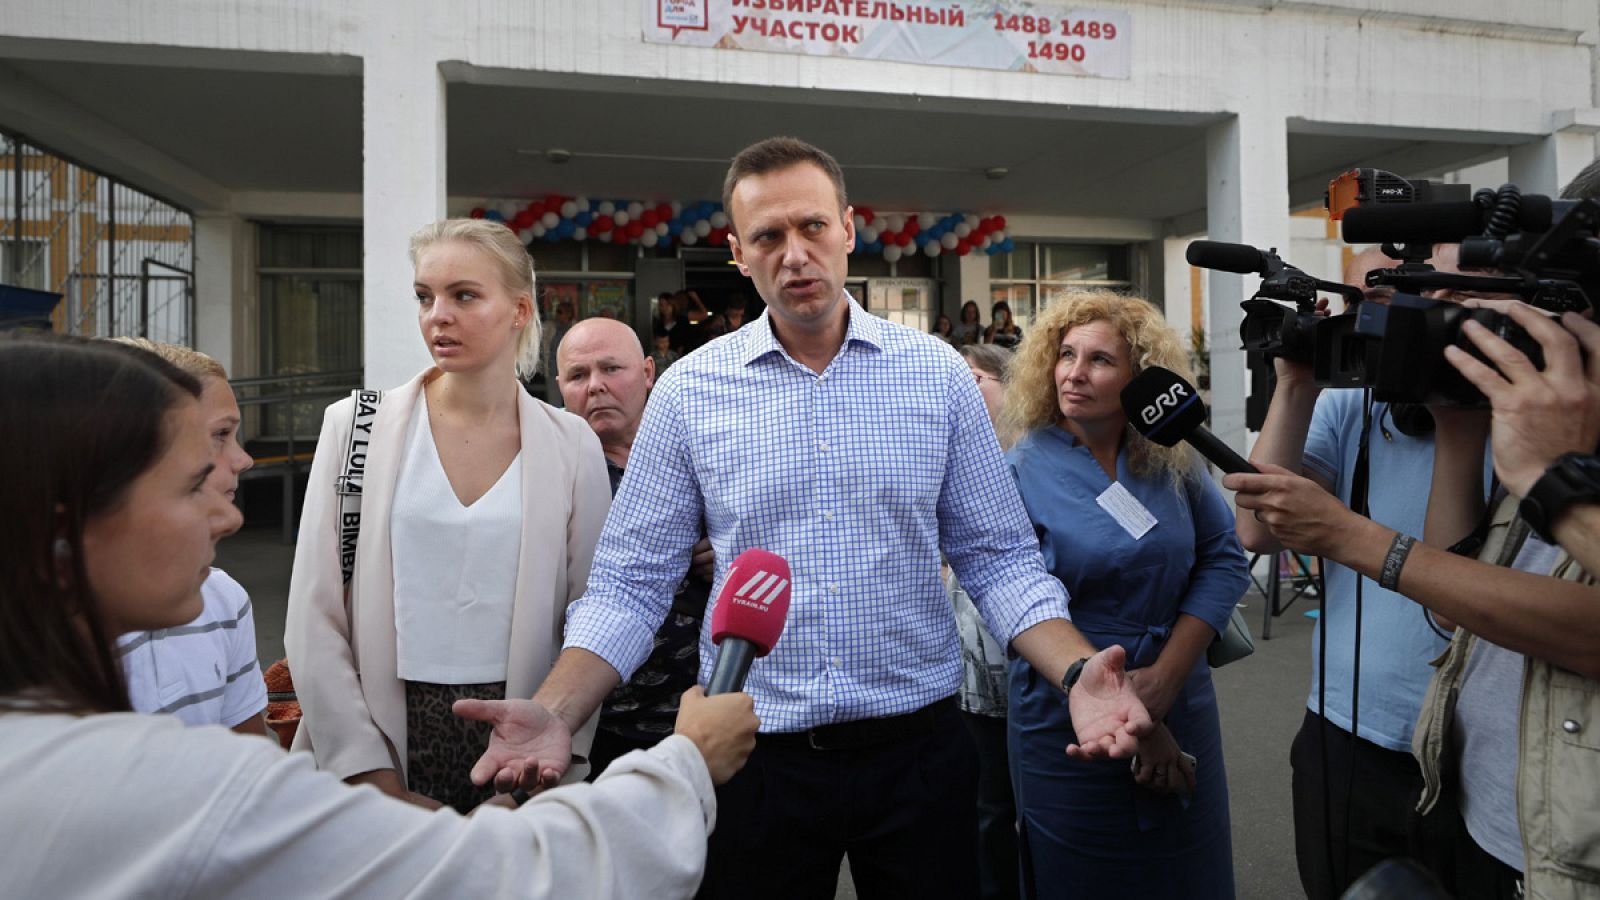 El candidato opositor Alexéi Navalni habla con los medios después de votar a la Duma de Moscú